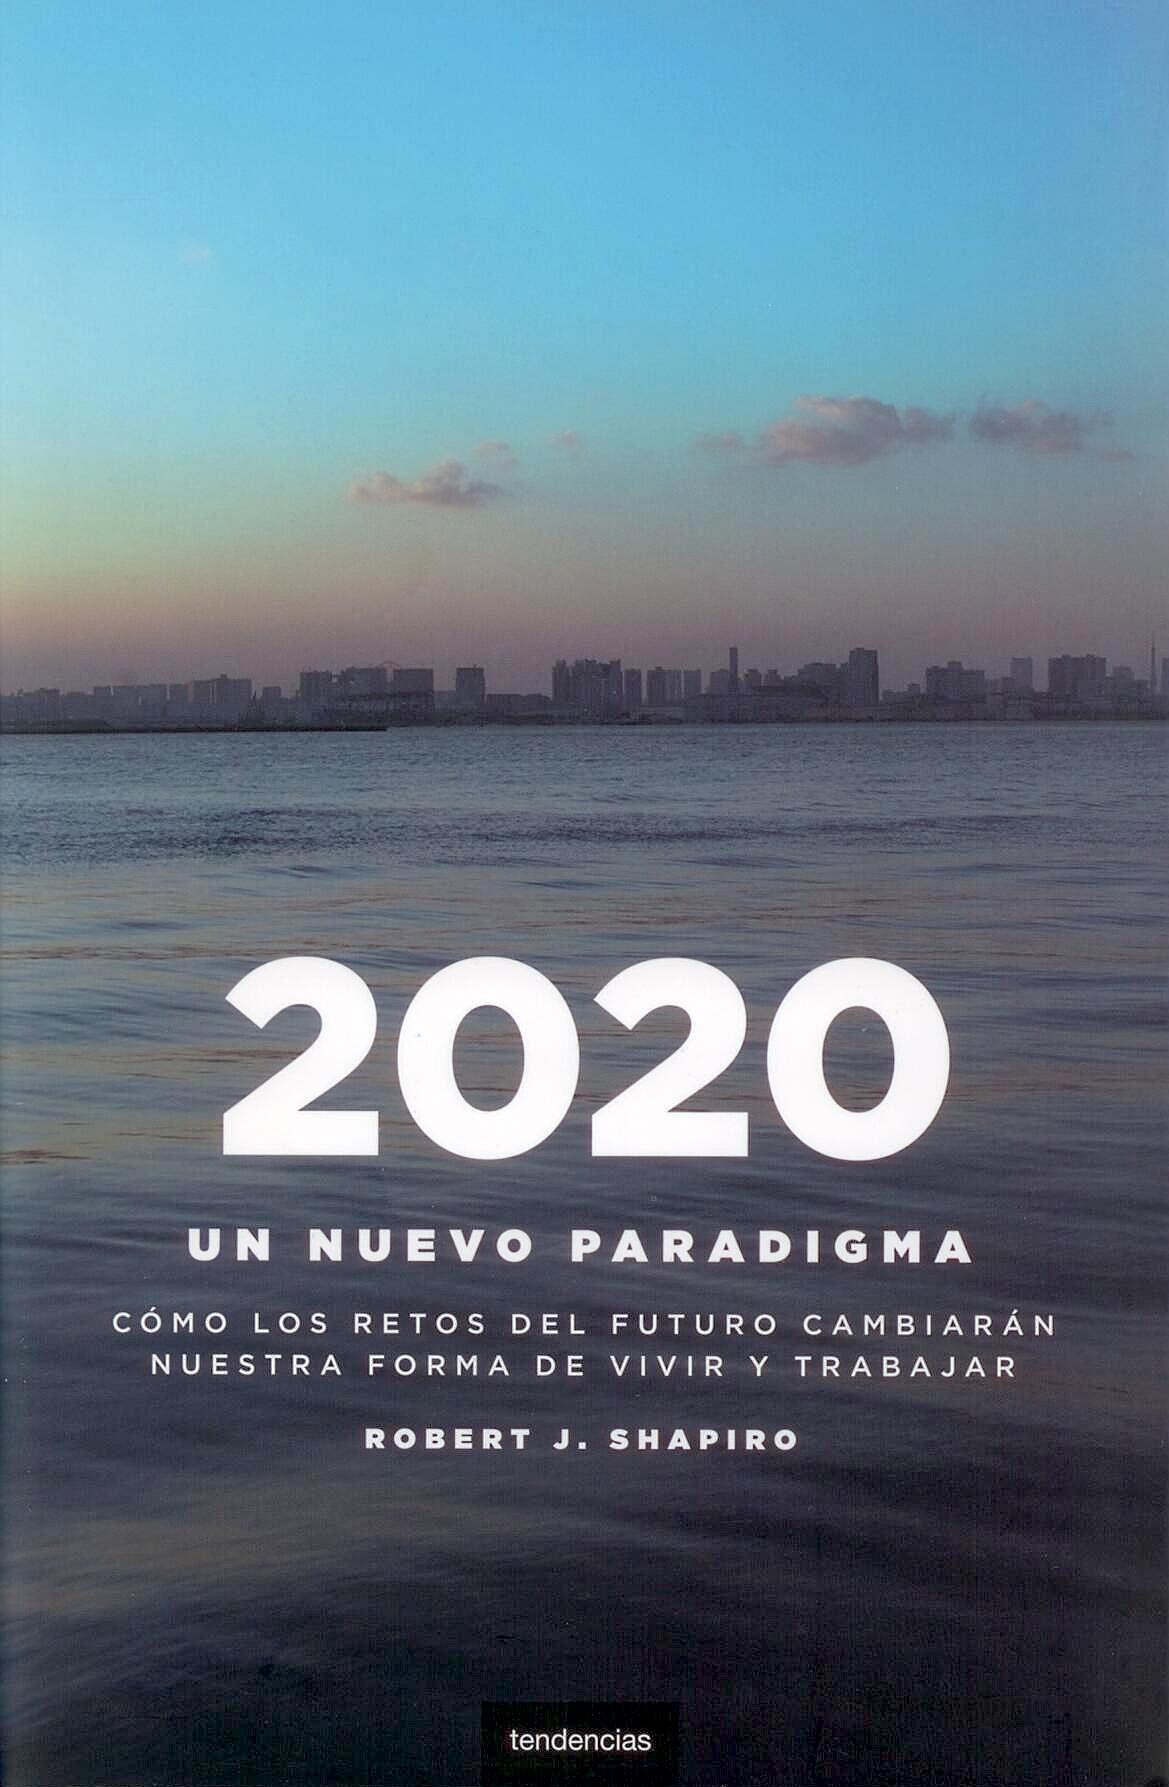 2020 "Un Nuevo Paradigma"